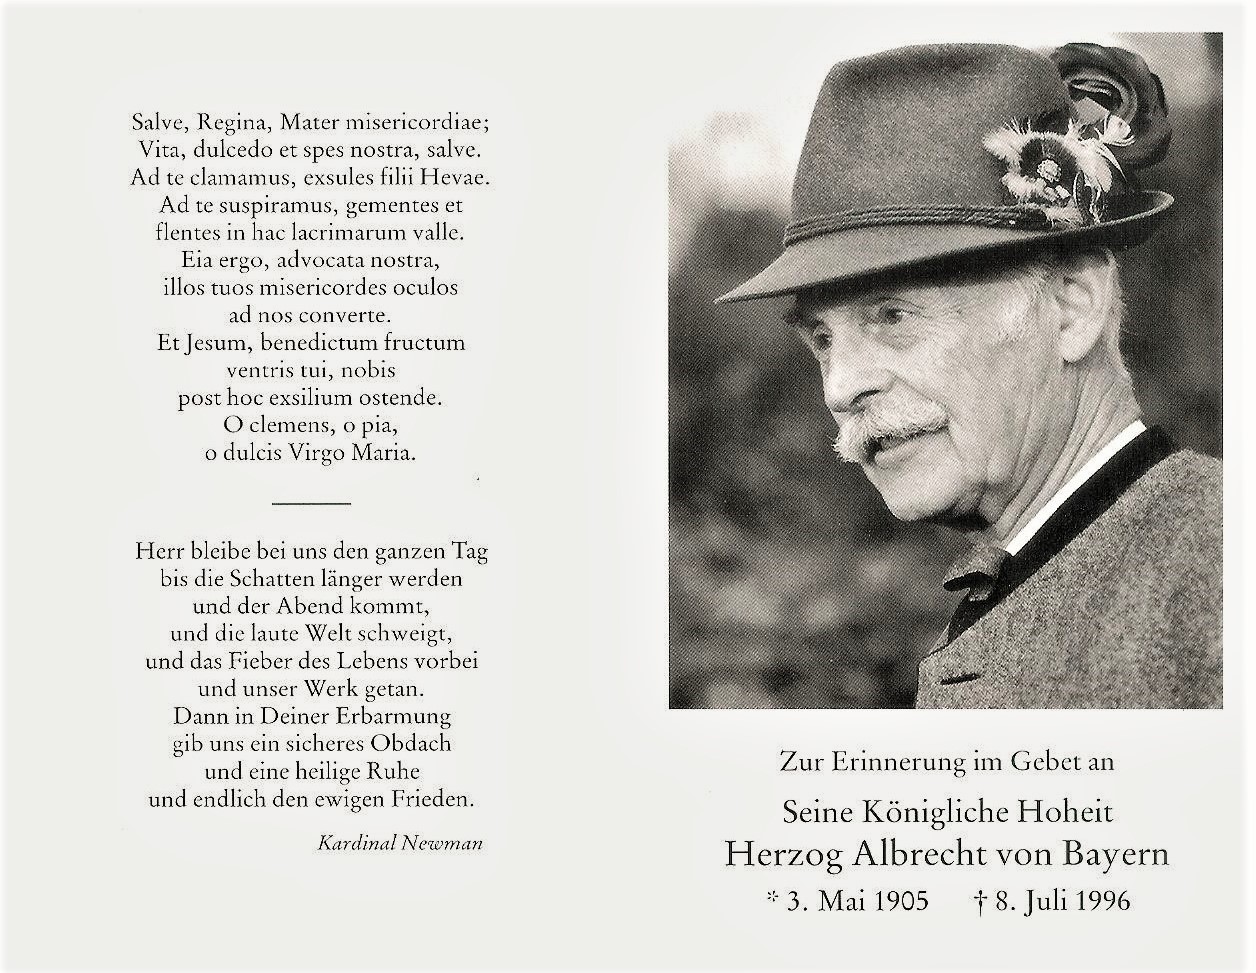 Herzog Albrecht von Bayern